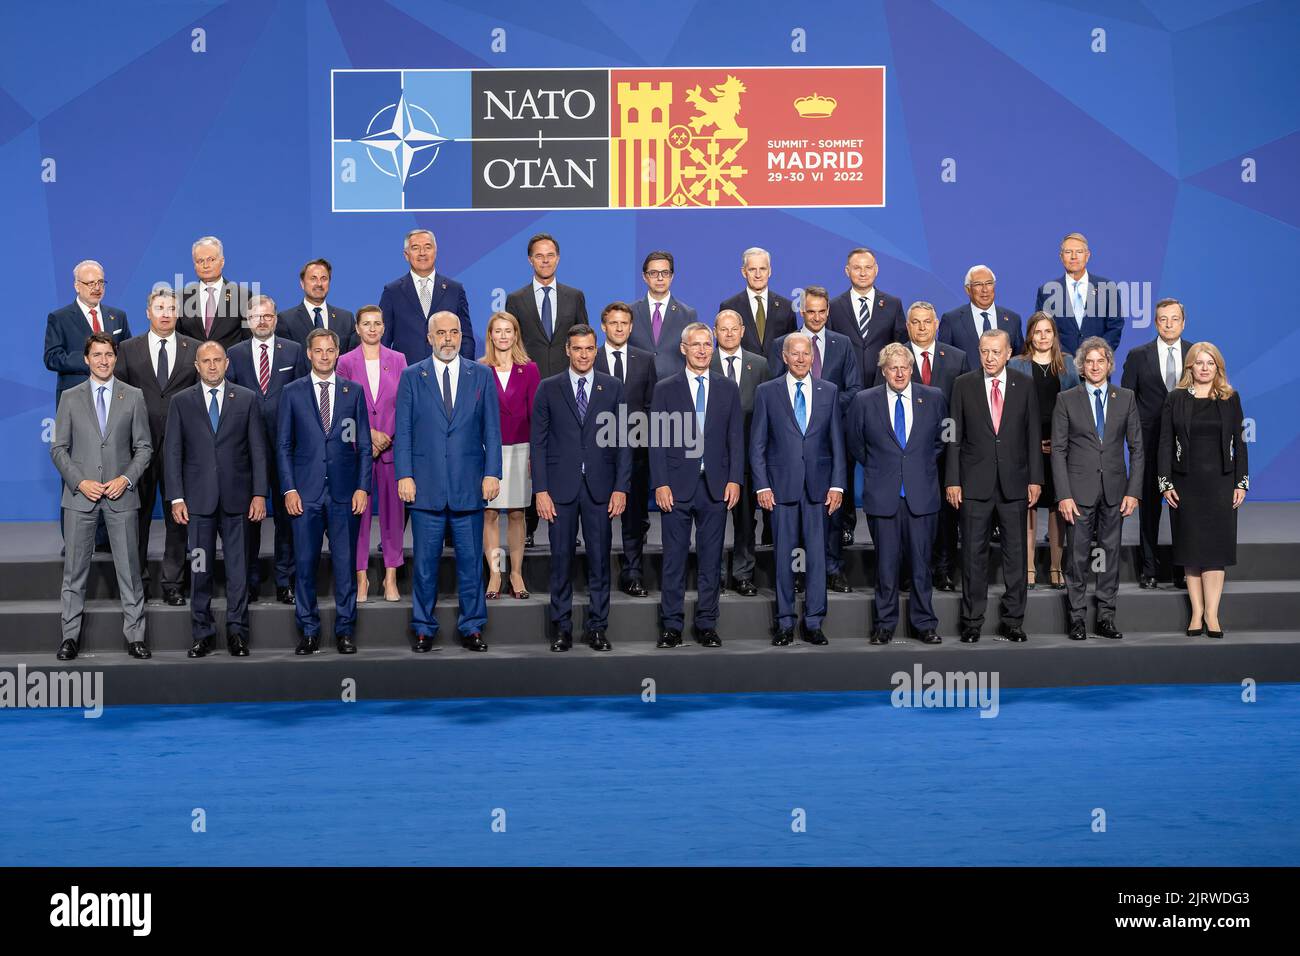 Präsident Joe Biden posiert für ein Familienfoto mit den NATO-Führern am Mittwoch, den 29. Juni 2022, auf der IFEMA Madrid in Madrid. (Offizielles Foto des Weißen Hauses von Carlos Fyfe) Stockfoto